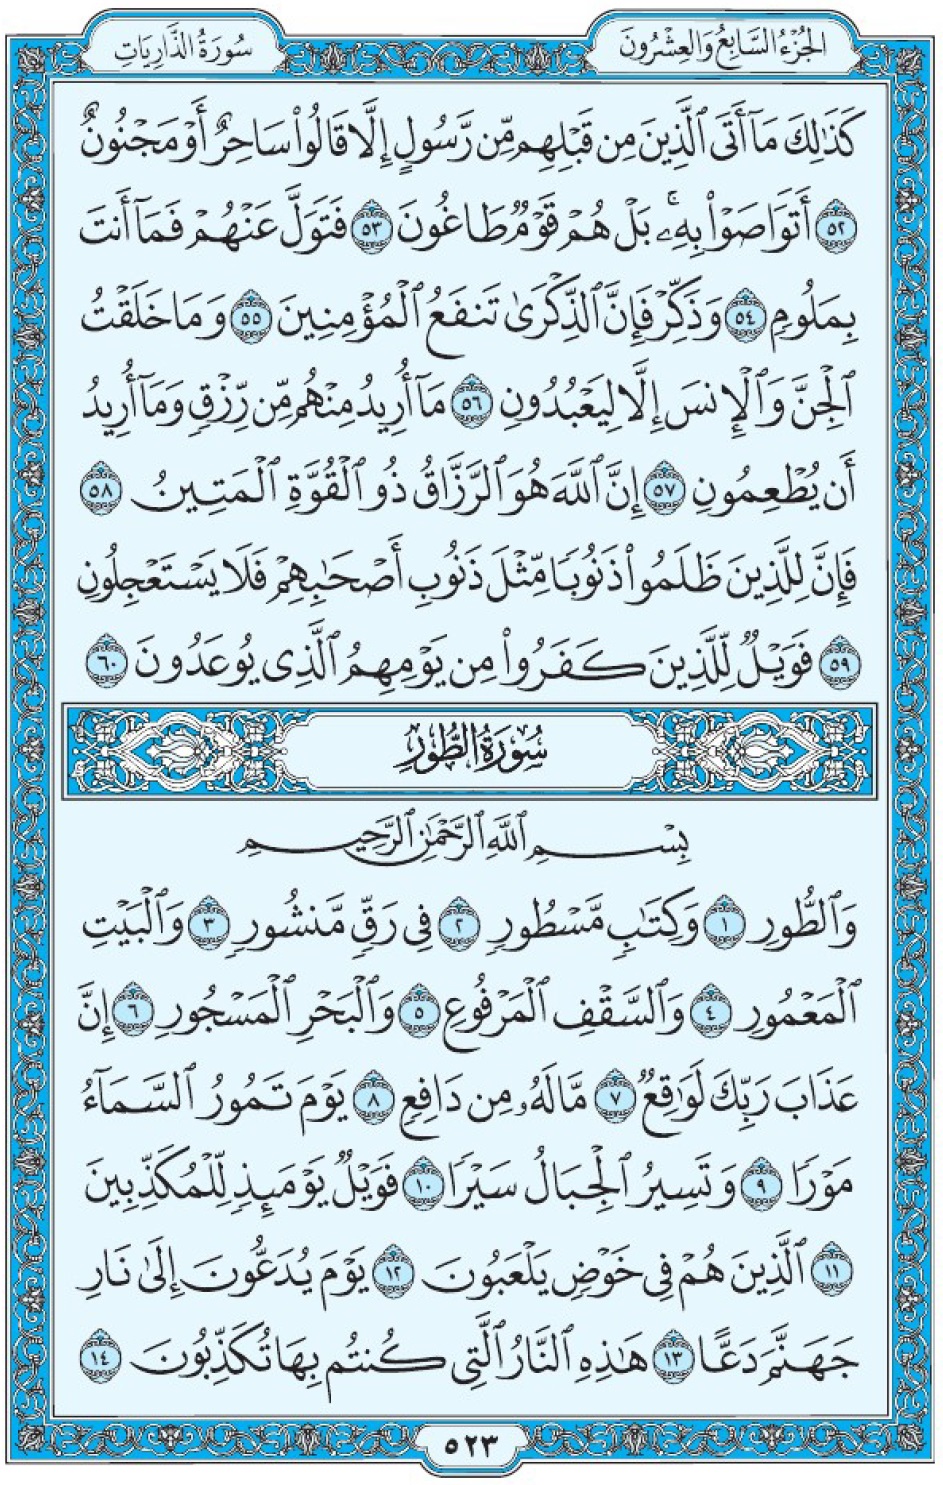 Коран Мединский мусхаф страница 523, сура 52 ат-Тур سورة ٥٢ الطور